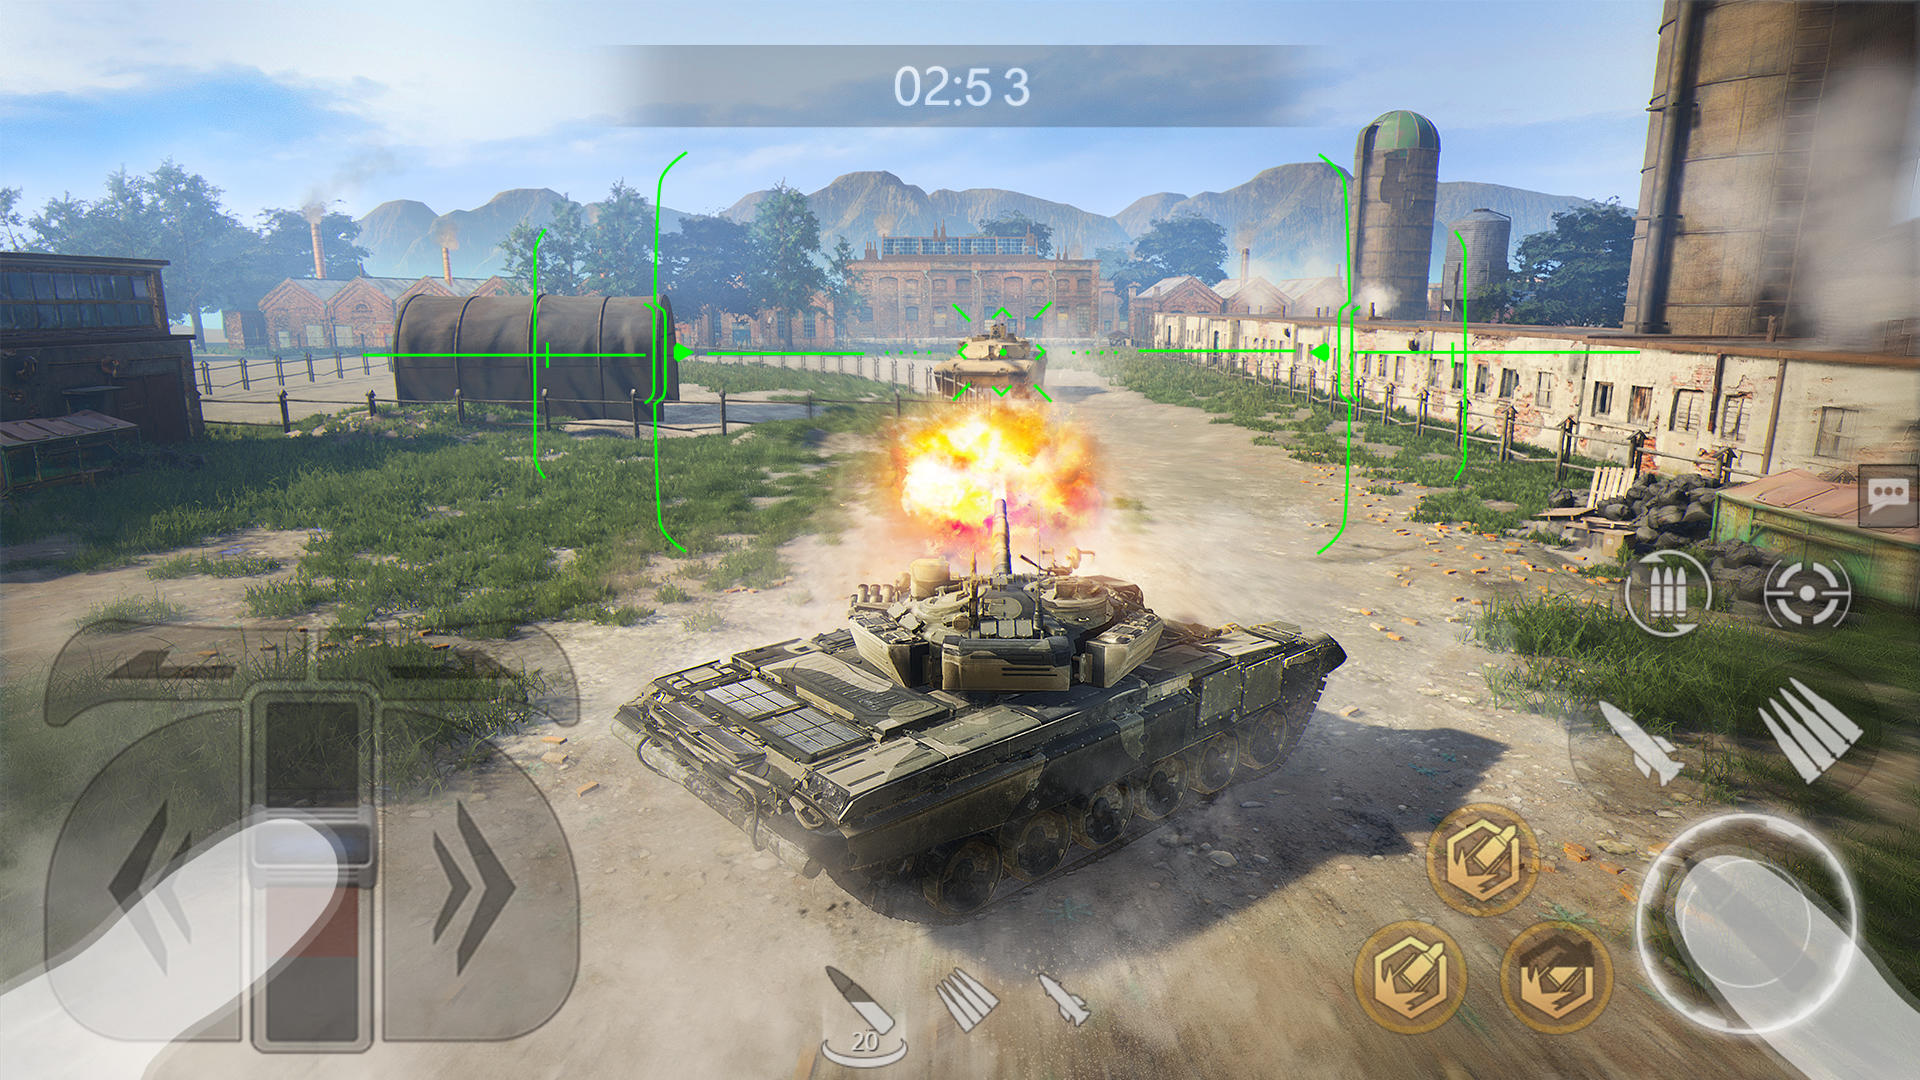 Screenshot 1 of Pertembungan Panzer: Pertempuran Kereta Kebal 3.0.2